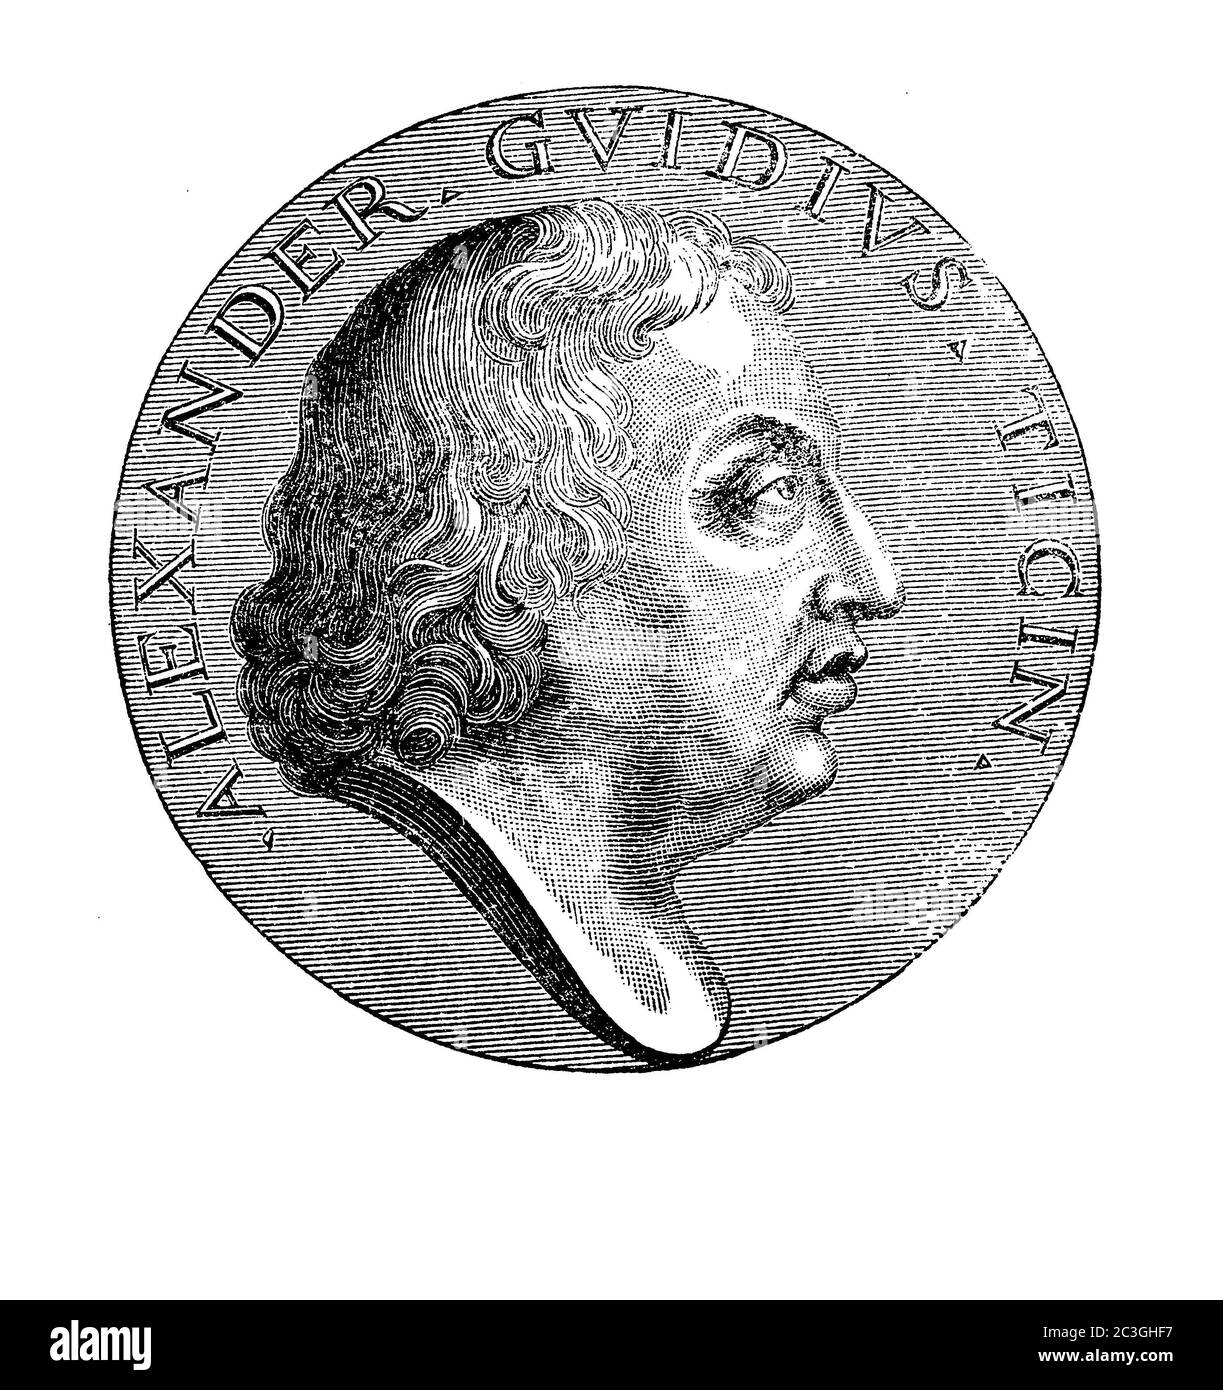 Gravurporträt von Carlo Alessandro Guidi ( 1650 - 1712) Italienischer Lyriker geboren in Pavia Gründer der römischen Akademie Arcadia, sehr wichtig bei der Reform der italienischen Poesie Stockfoto